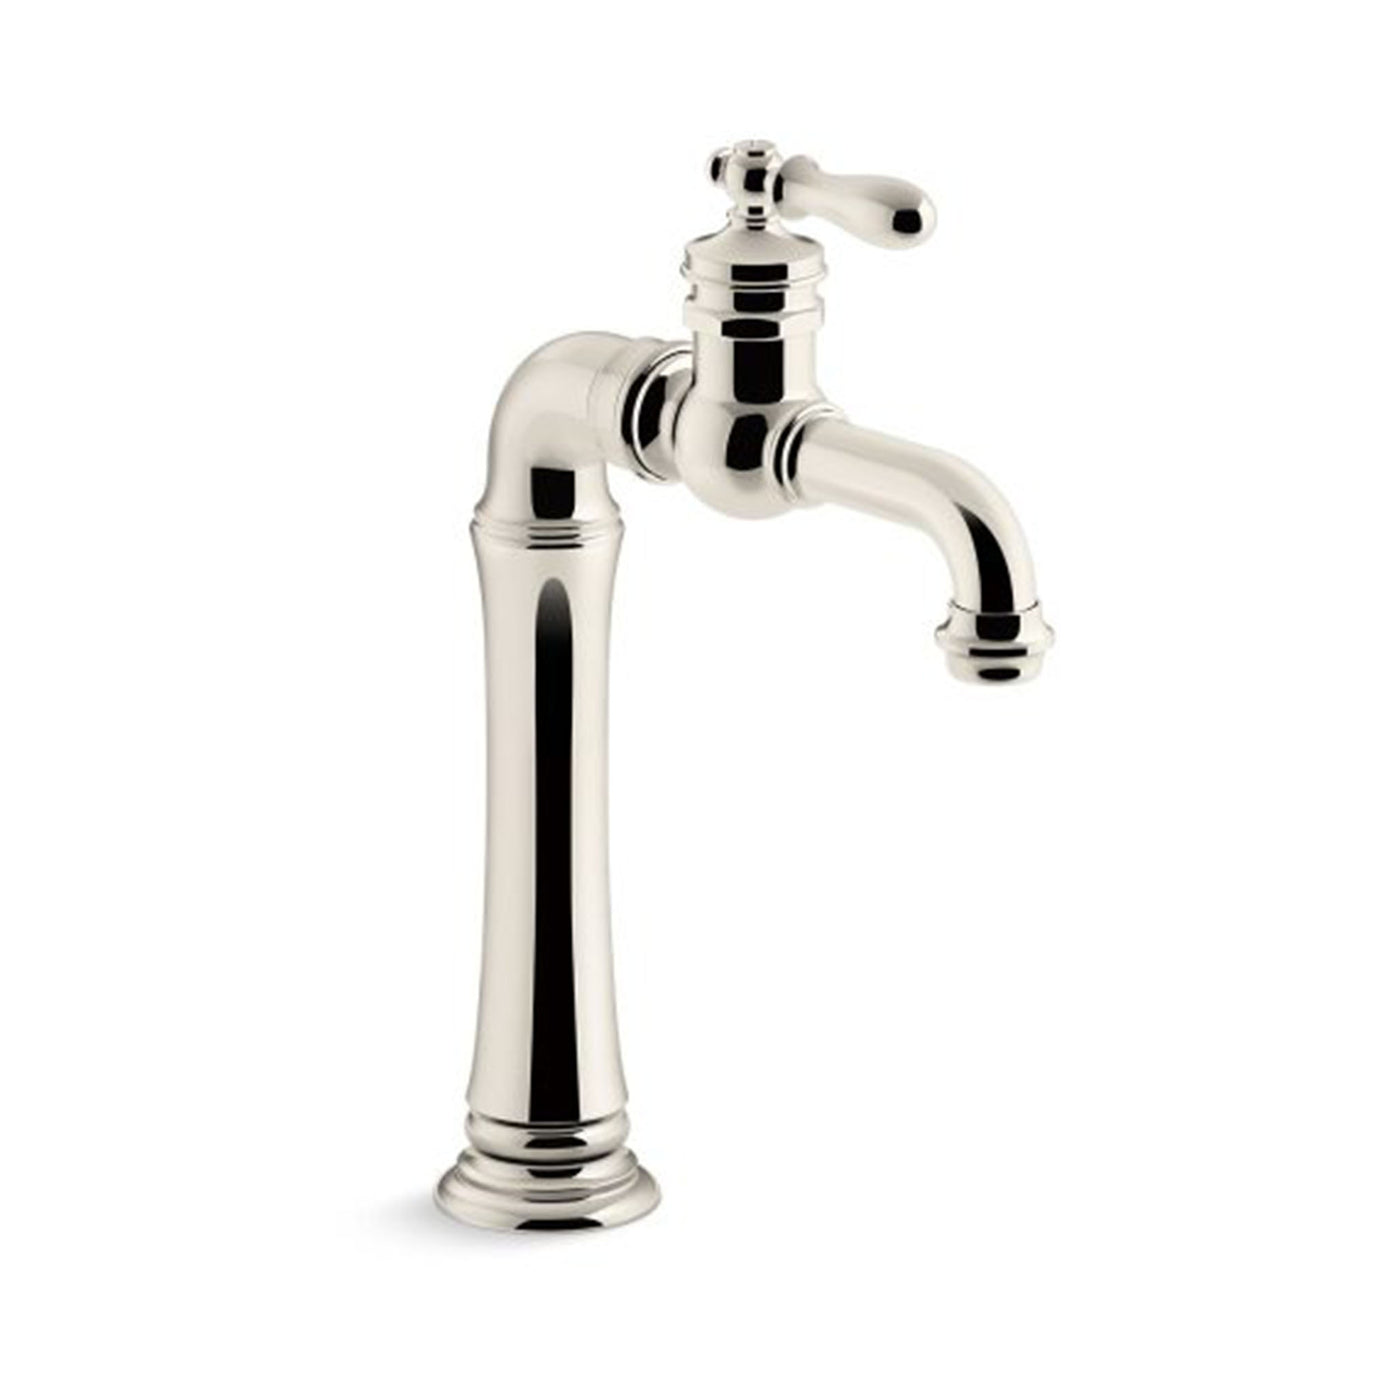 Artifacts® Gentleman's® Single-handle bar sink faucet